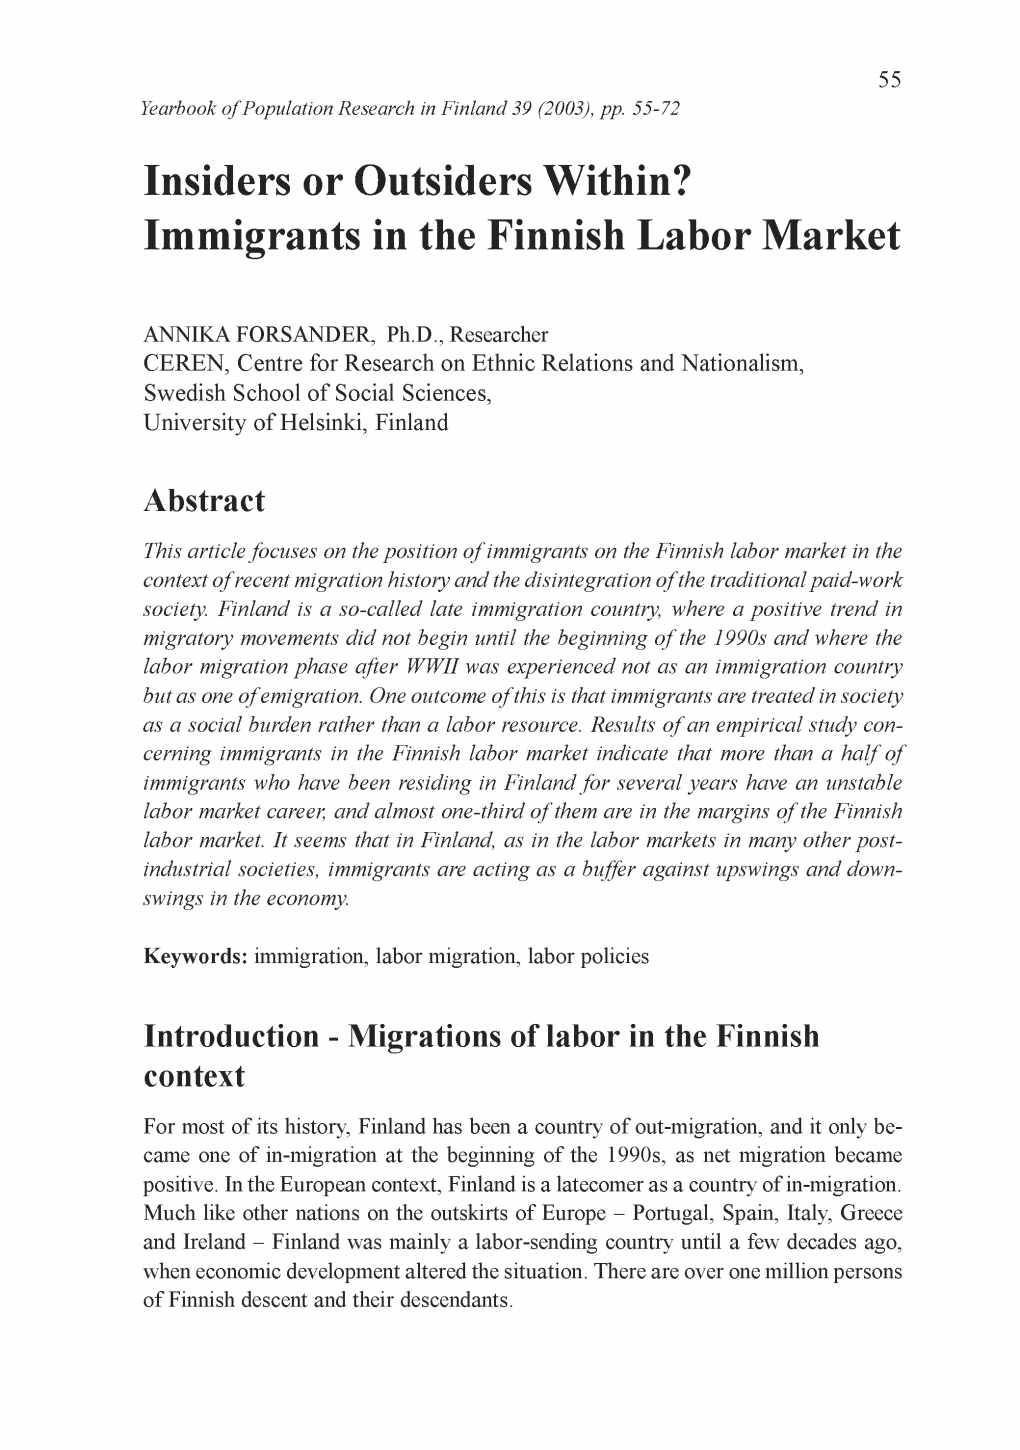 Immigrants in the Finnish Labor Market